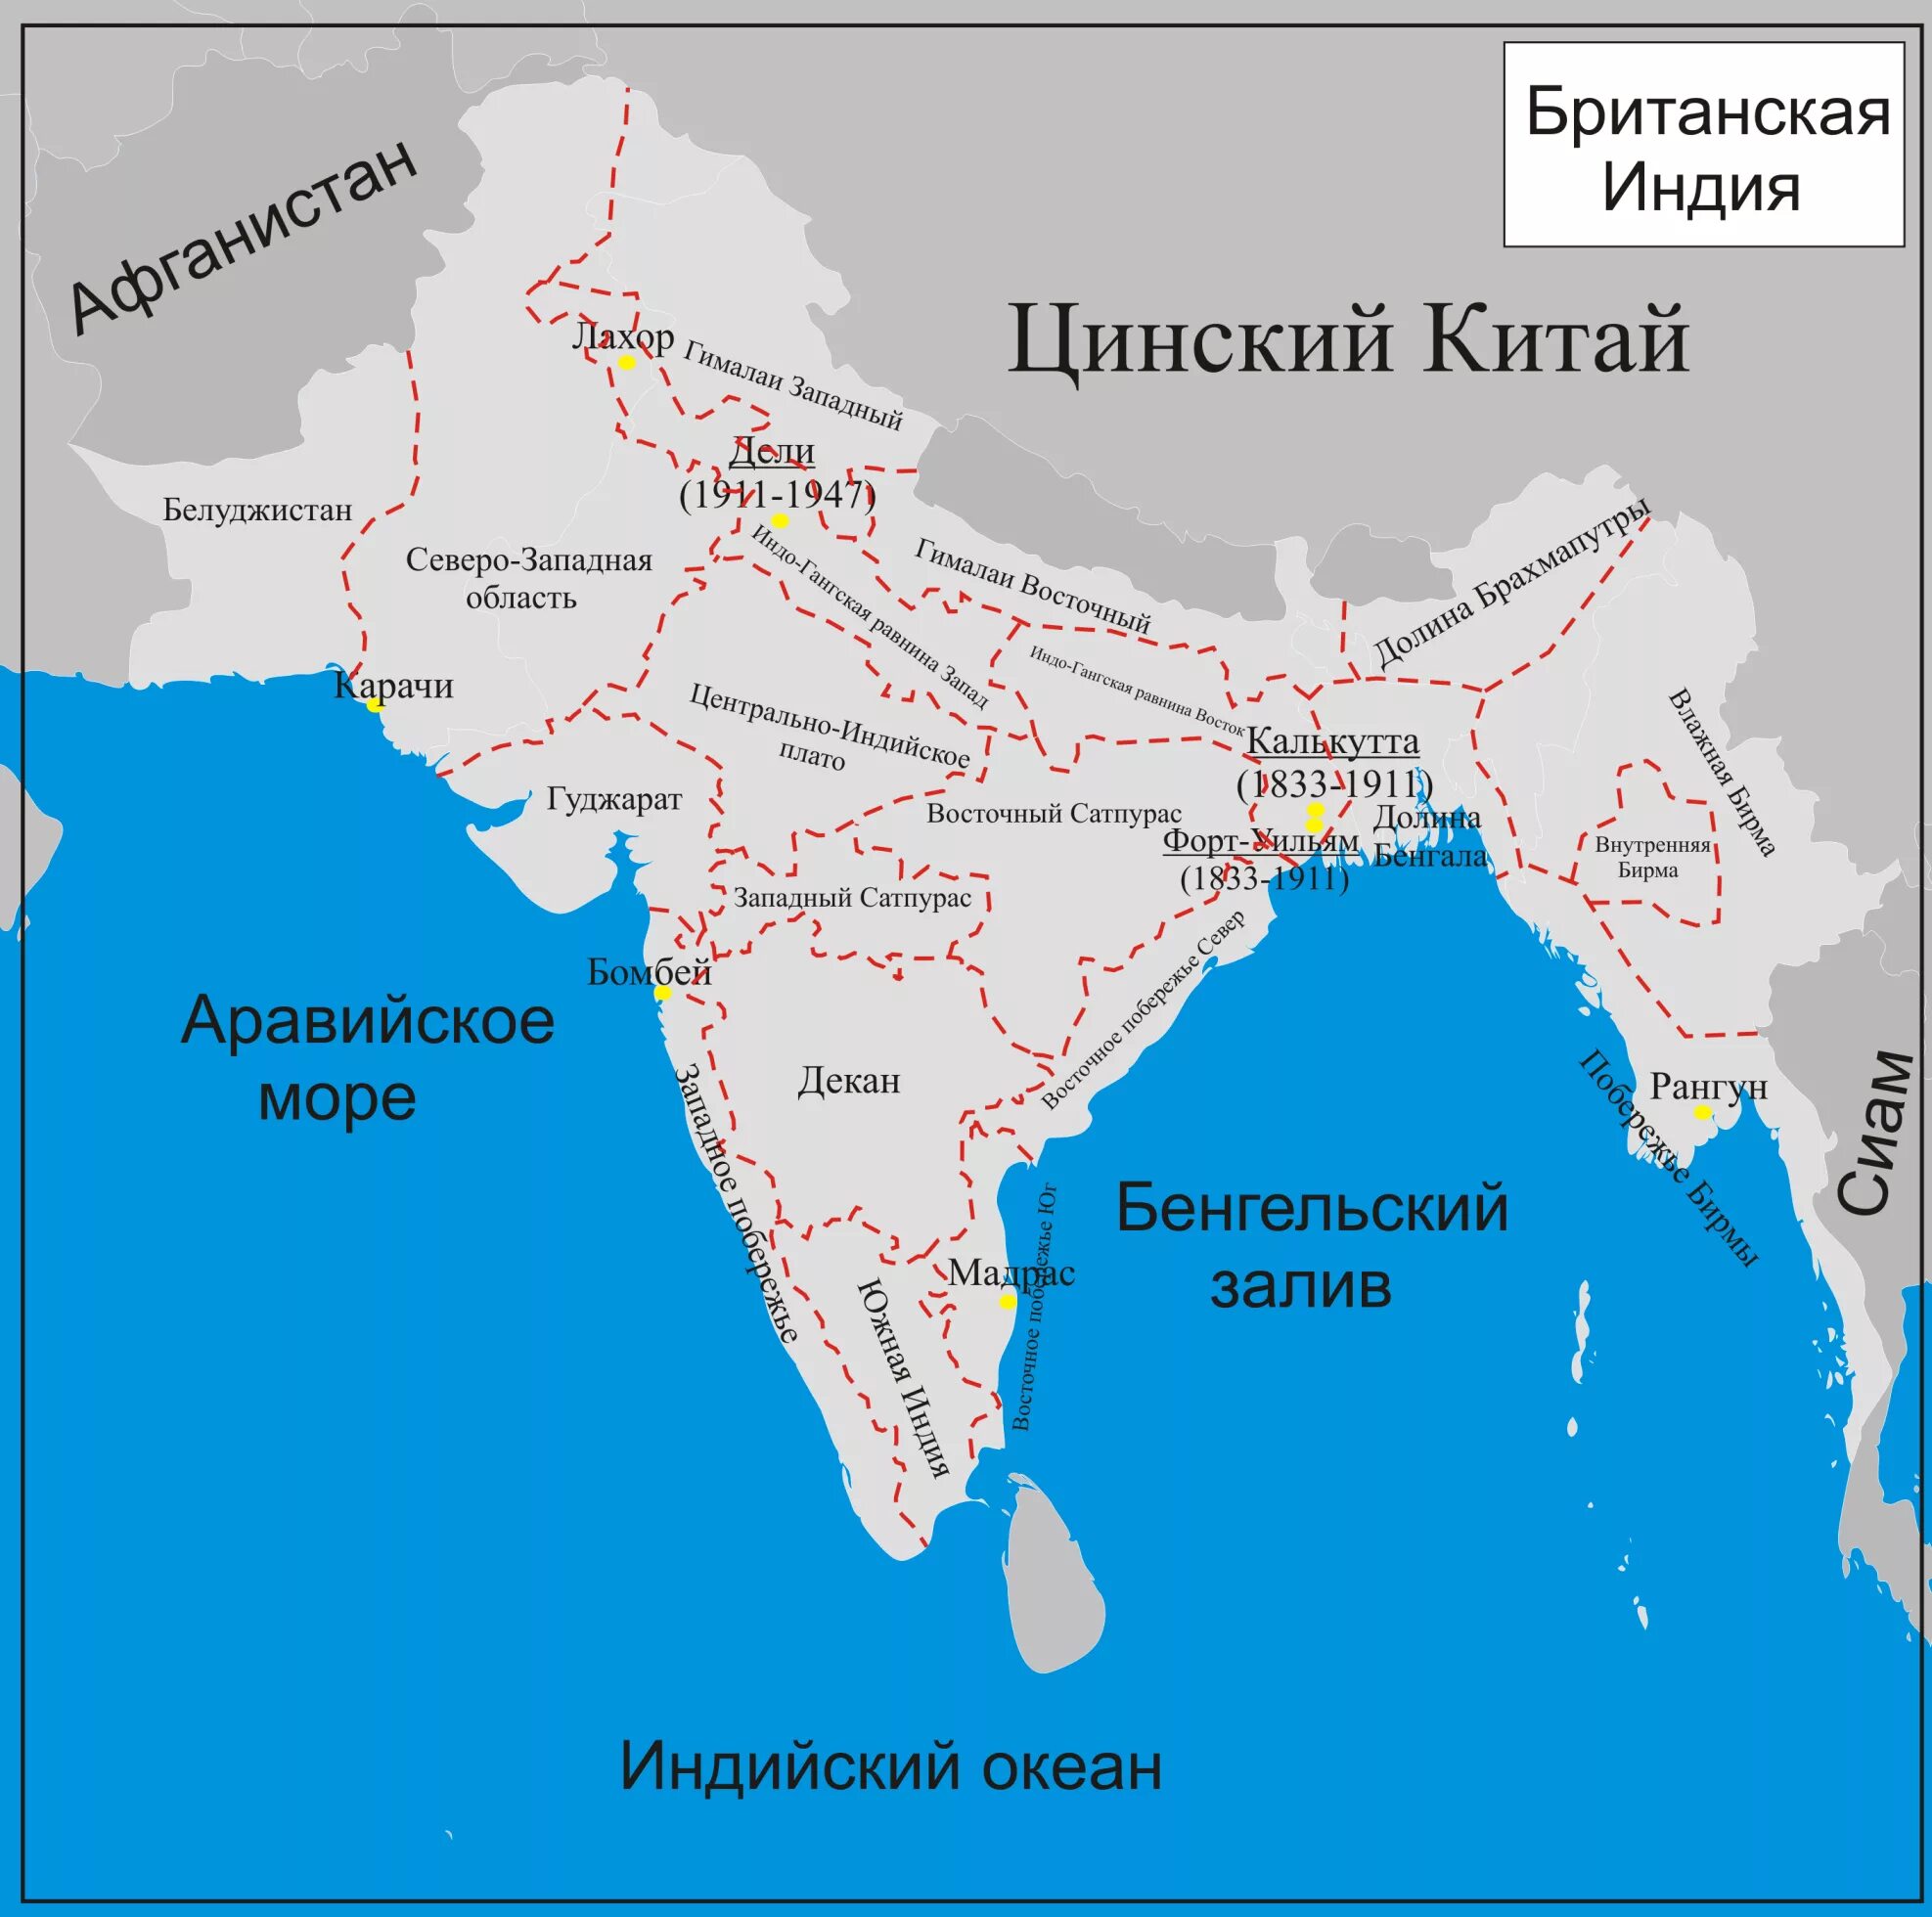 Британские колонии в Индии карта. Карта Индии 19 века. Британская Индия карта 19 век. Британская Индия в 19 веке карта. Британия в индии